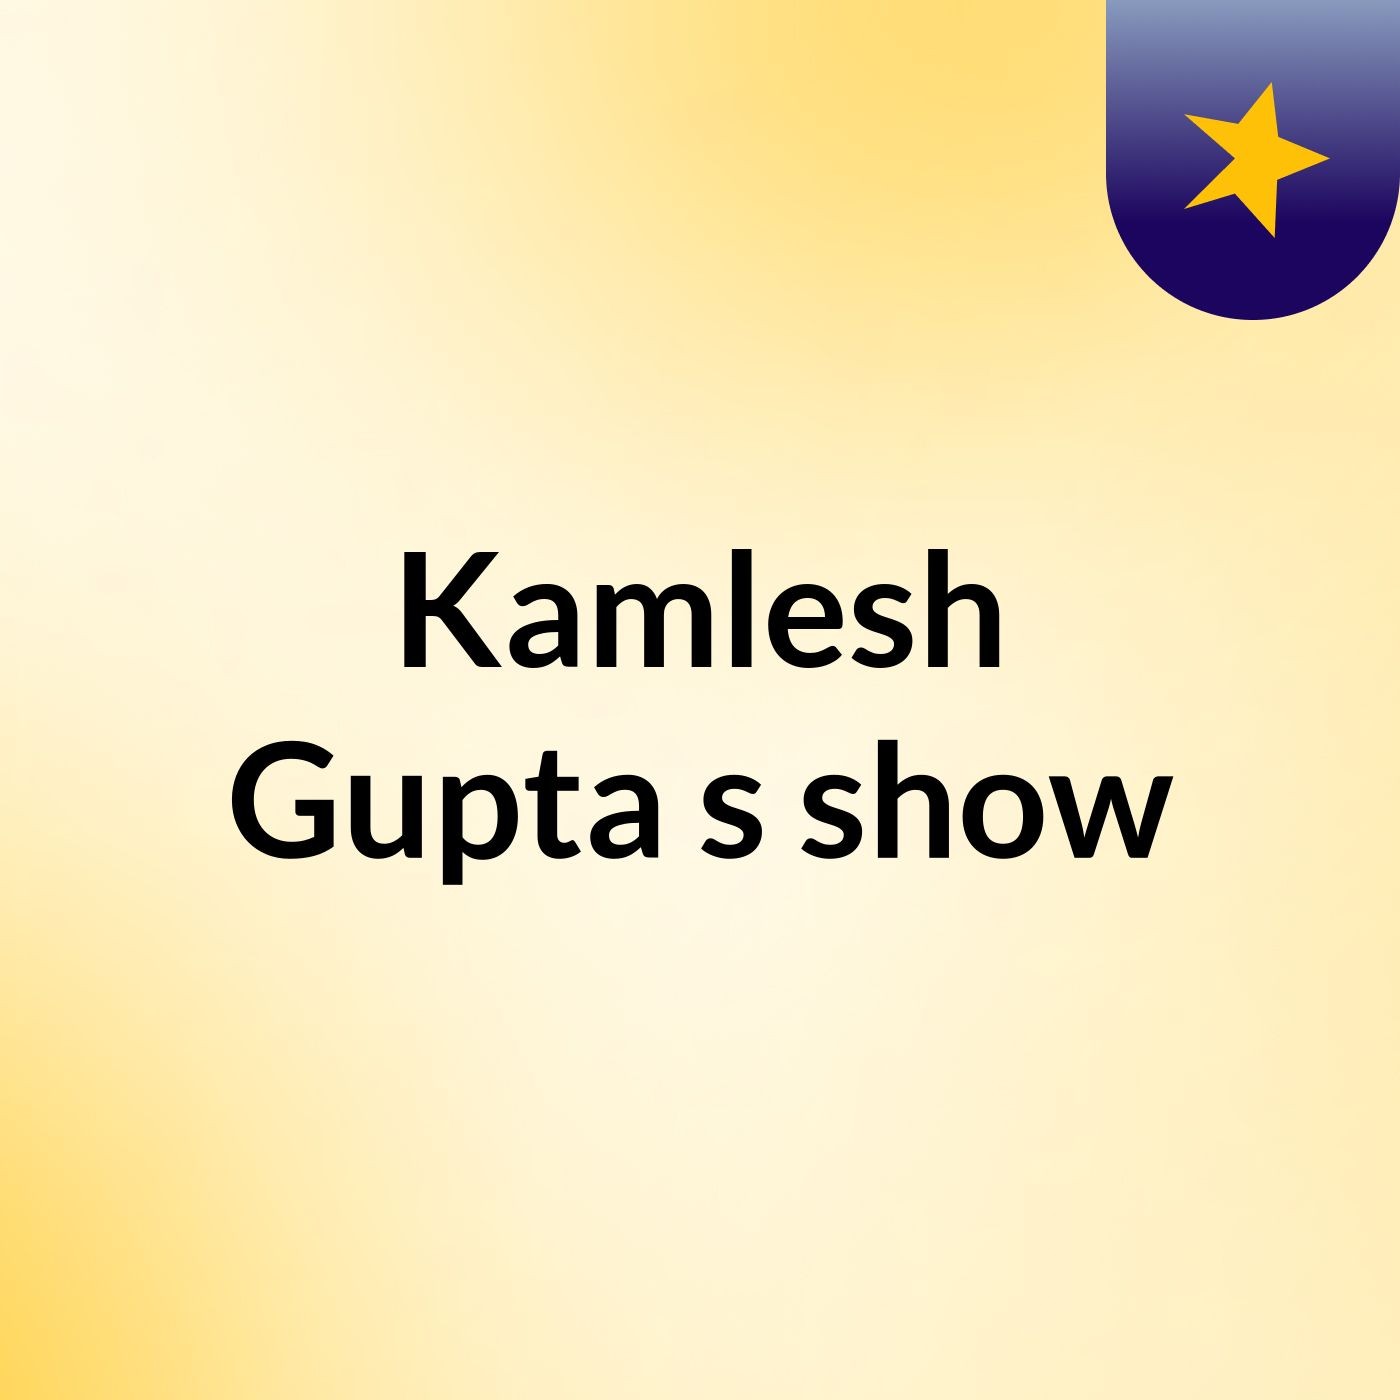 #Kamlesh Gupta's show